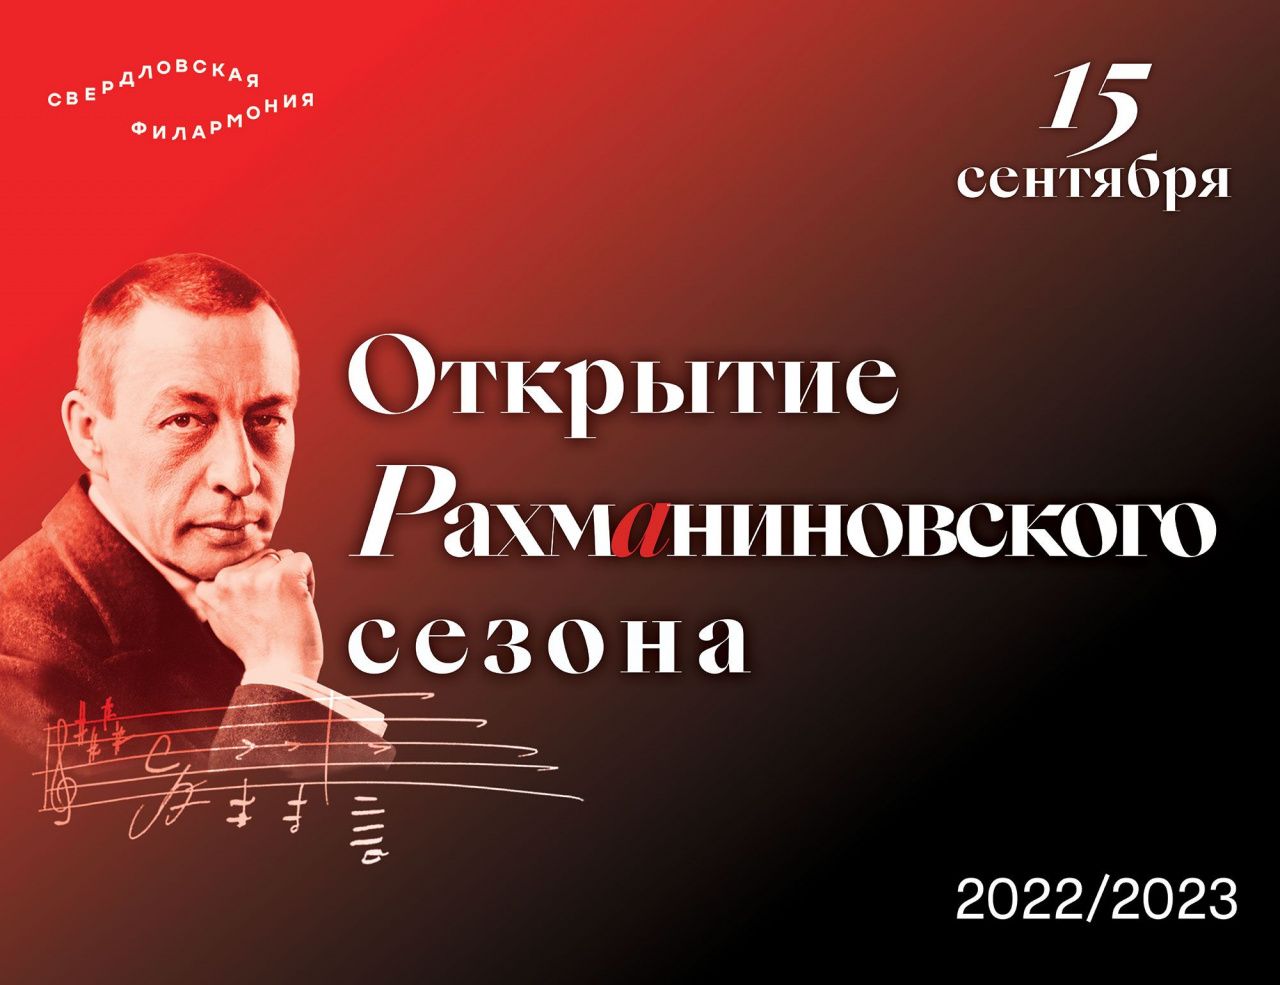 Серовчан зовут на прямую трансляцию открытия Рахманиновского сезона в Свердловской филармонии